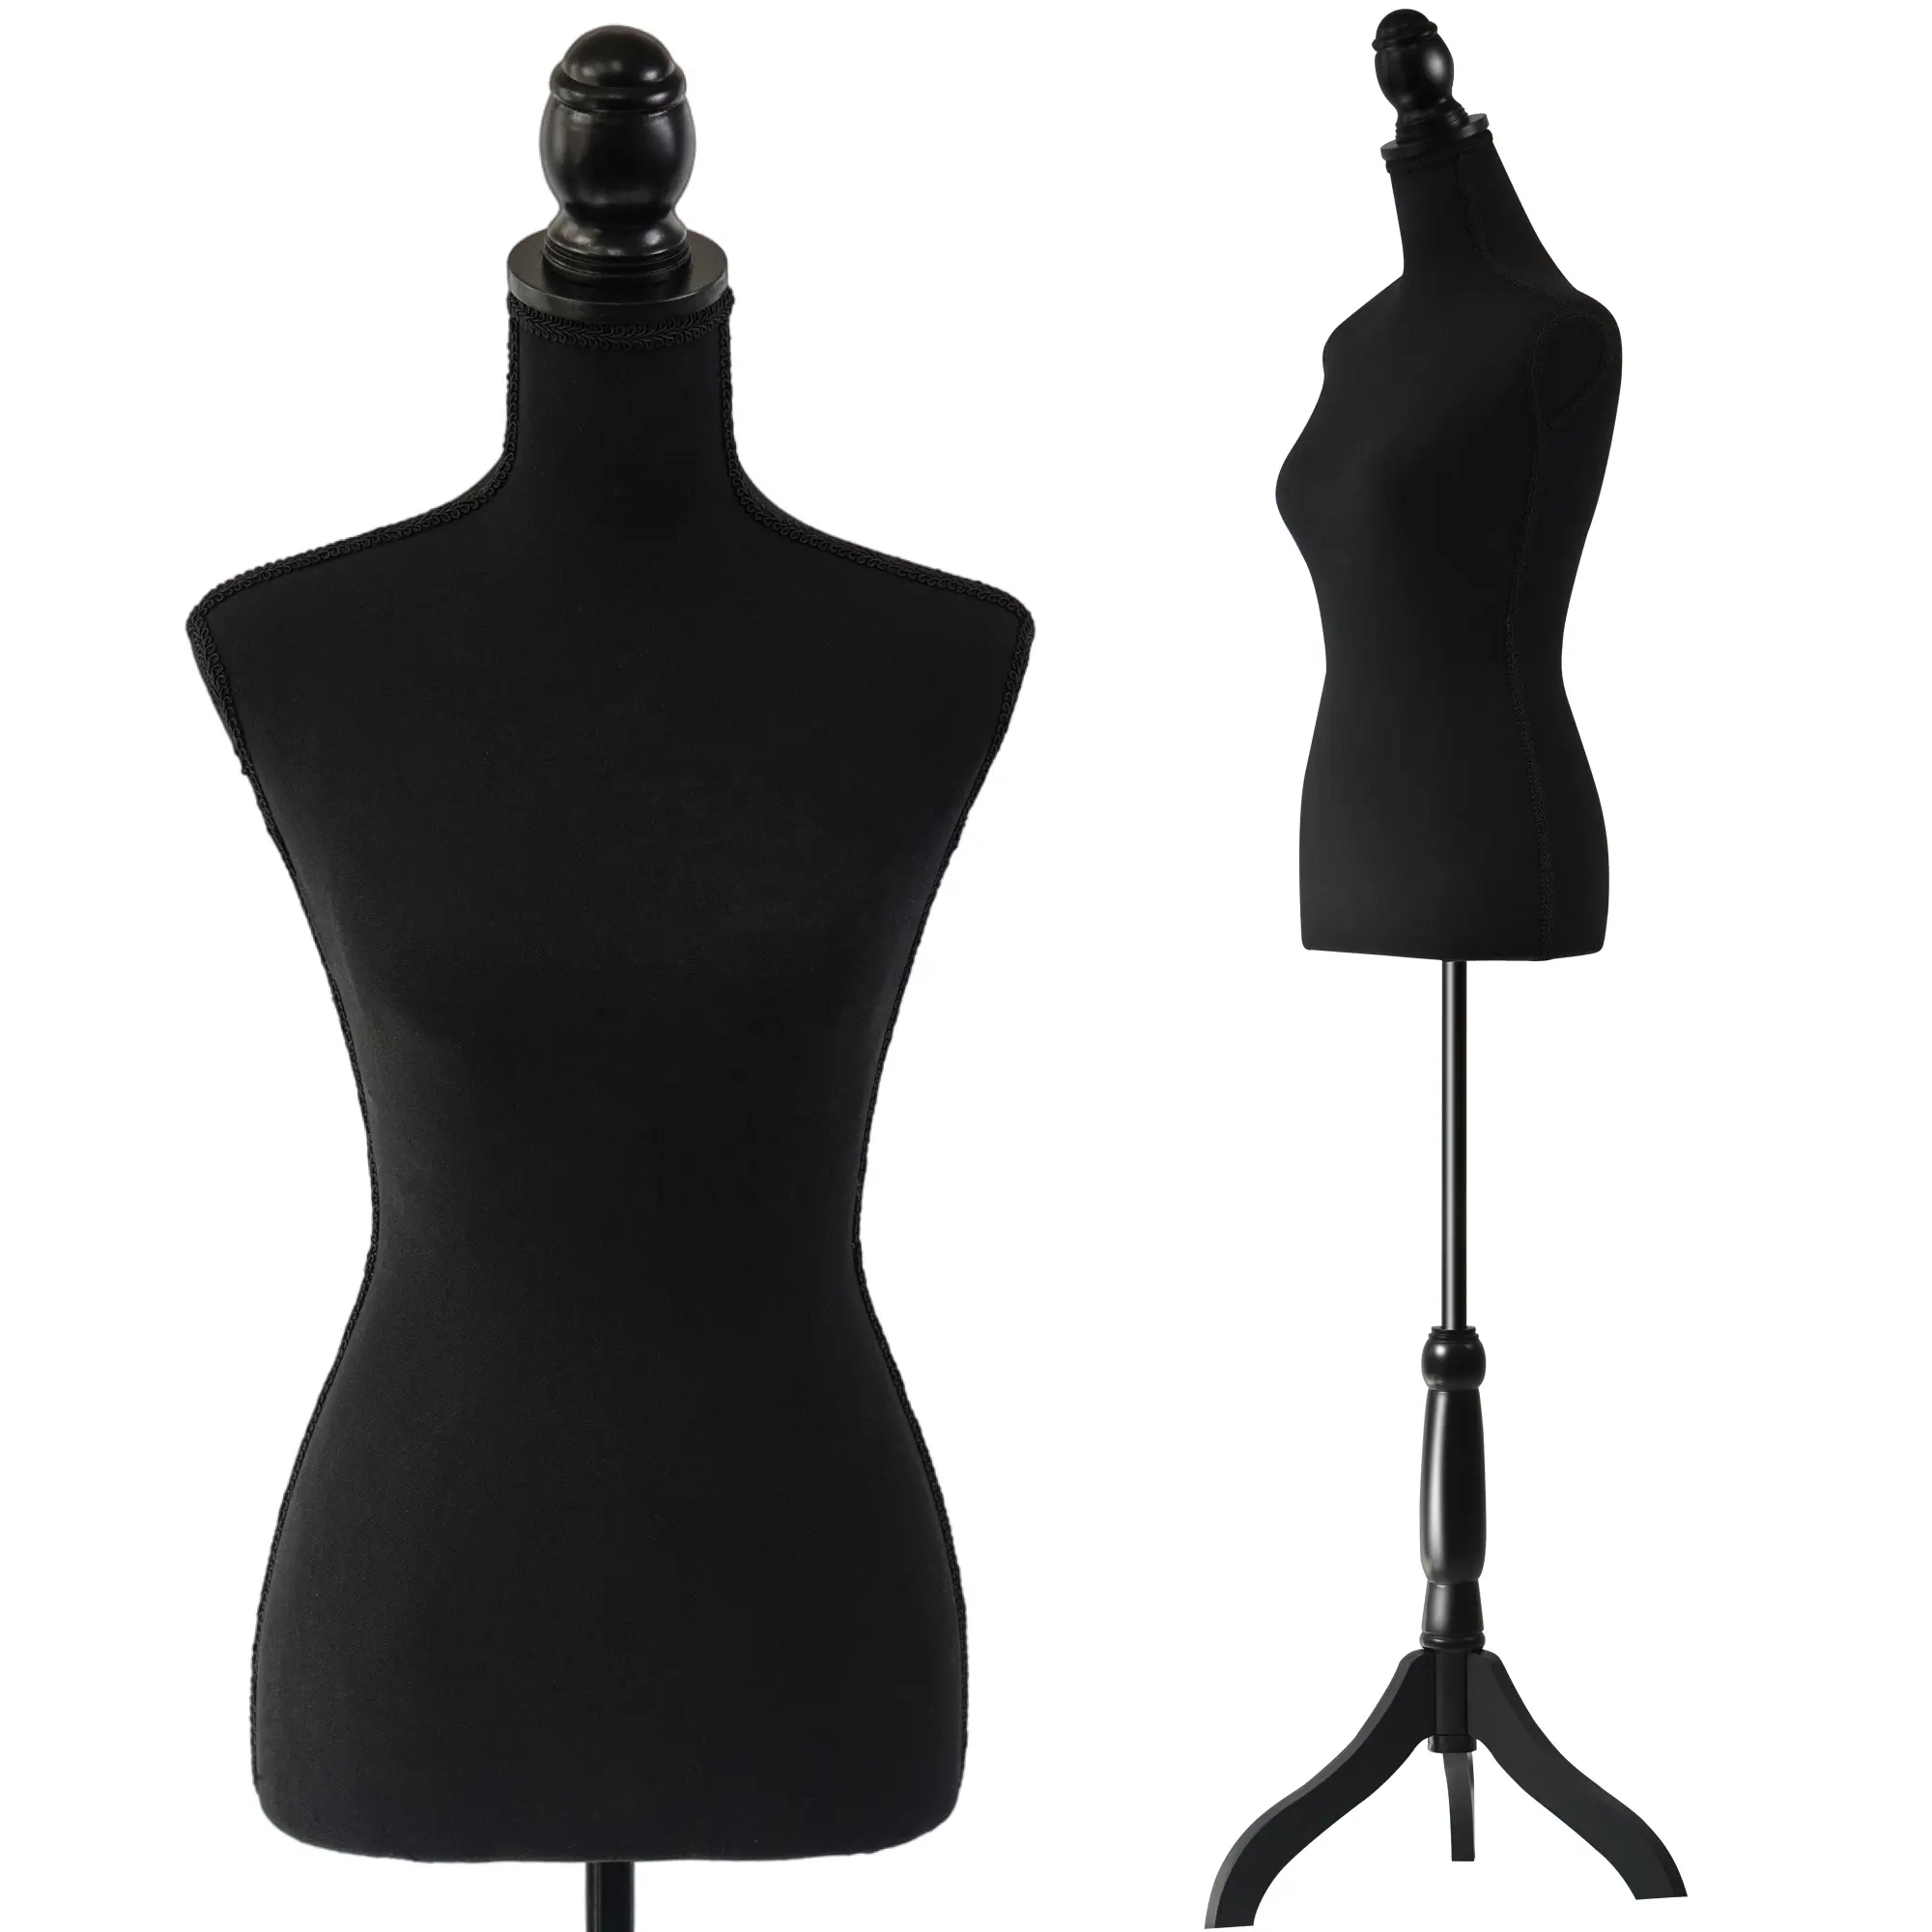 Siyah kadın manken Torso elbise formu Maniki vücut ahşap Tripod tabanı standı 60-67 inç dikiş için terziler elbise